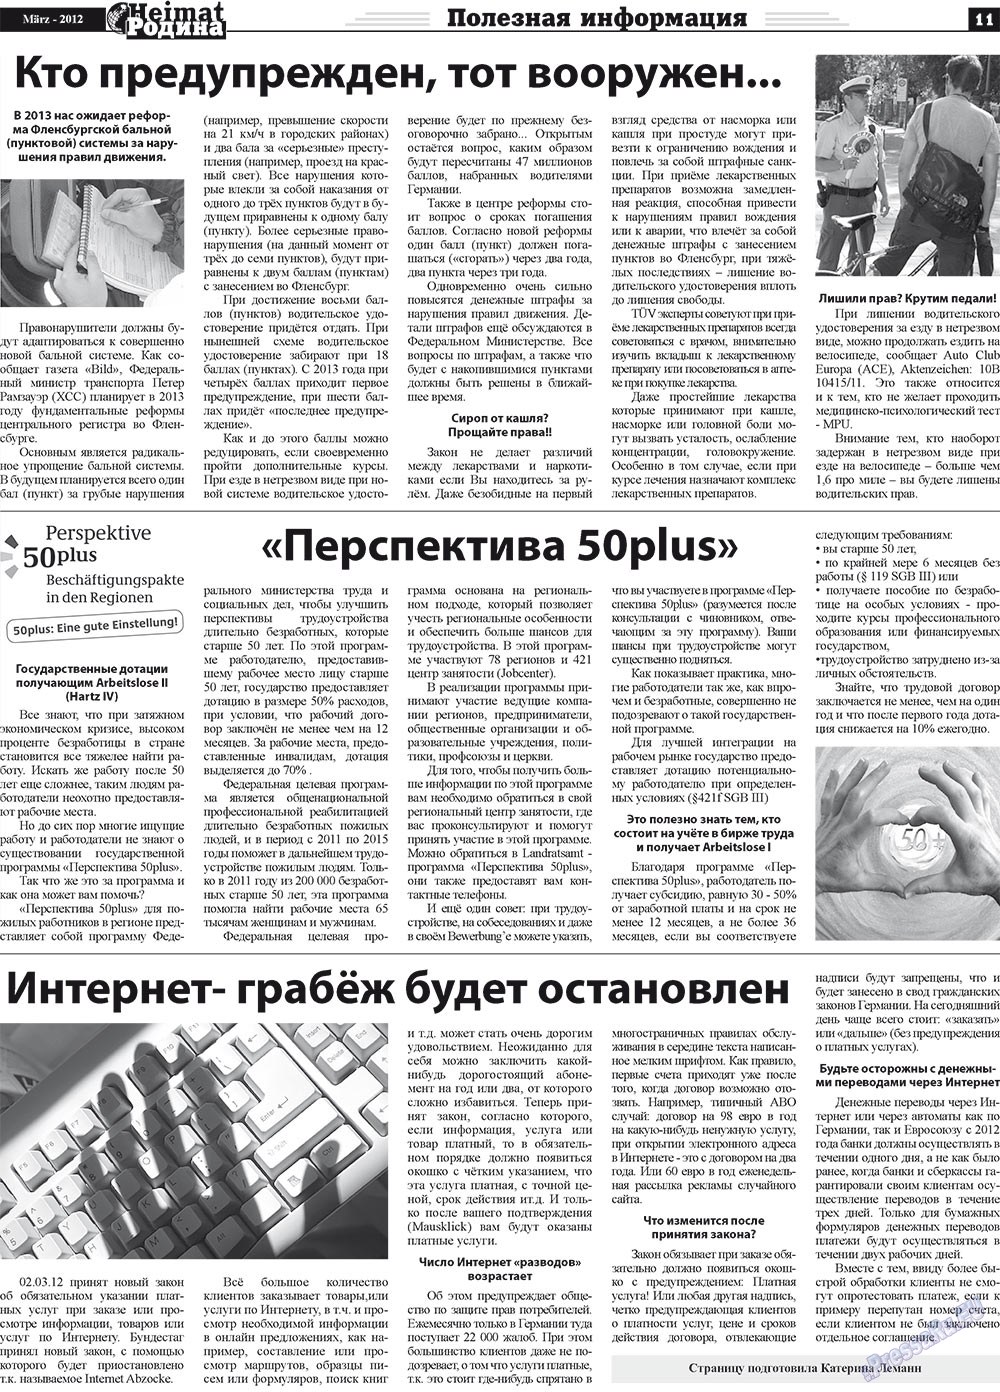 Heimat-Родина (газета). 2012 год, номер 3, стр. 11